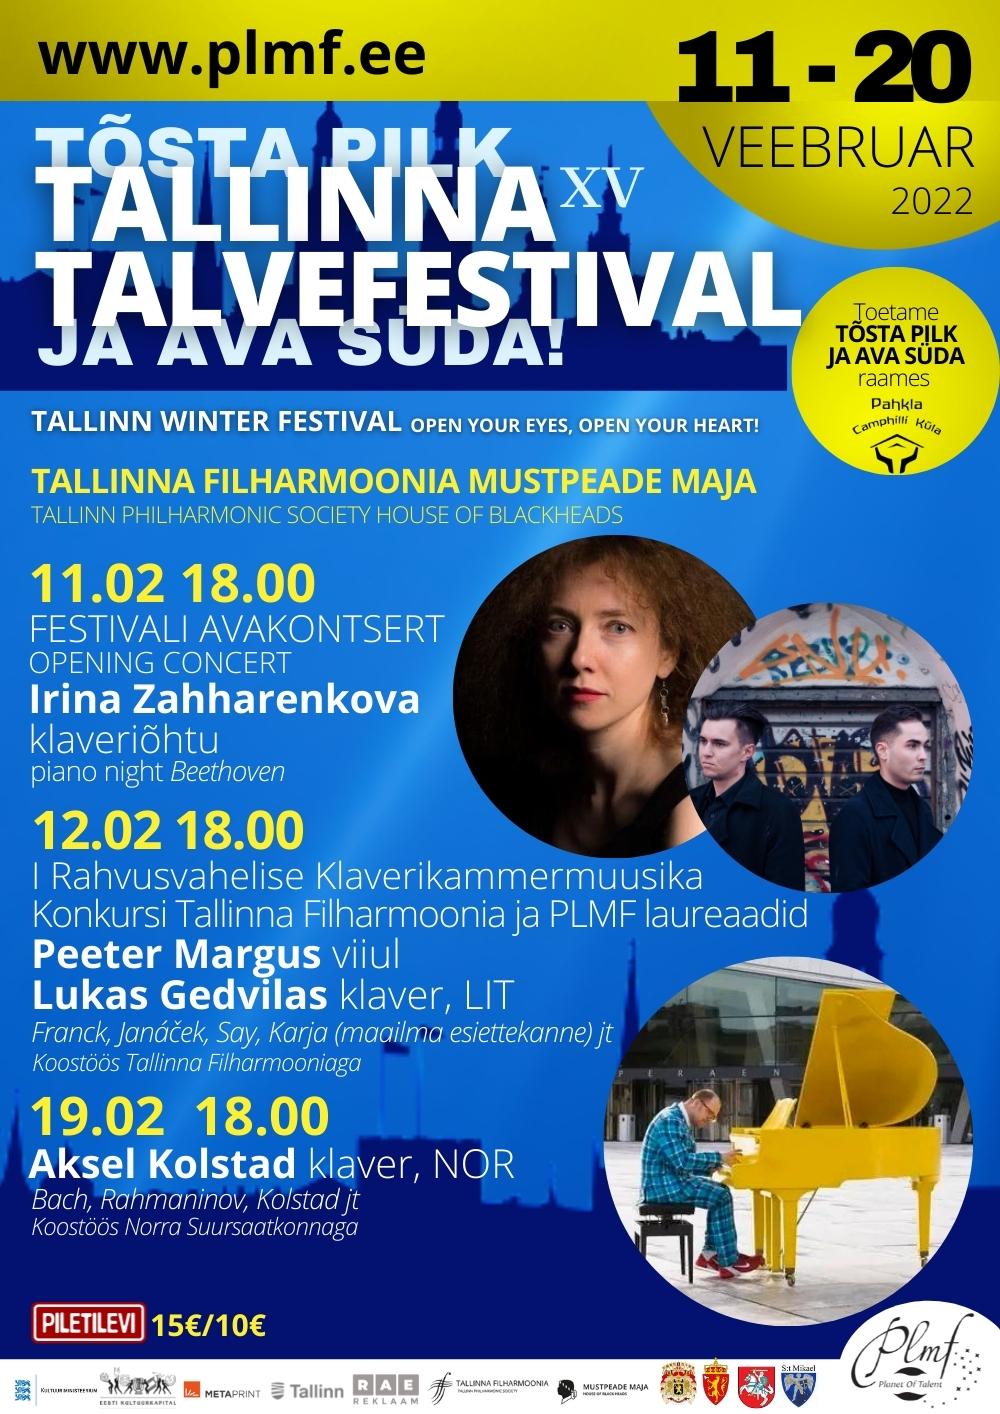 XV Tallinna Talvefestivali avakontsert ''IRINA ZAHHARENKOVA klaveriõhtu''